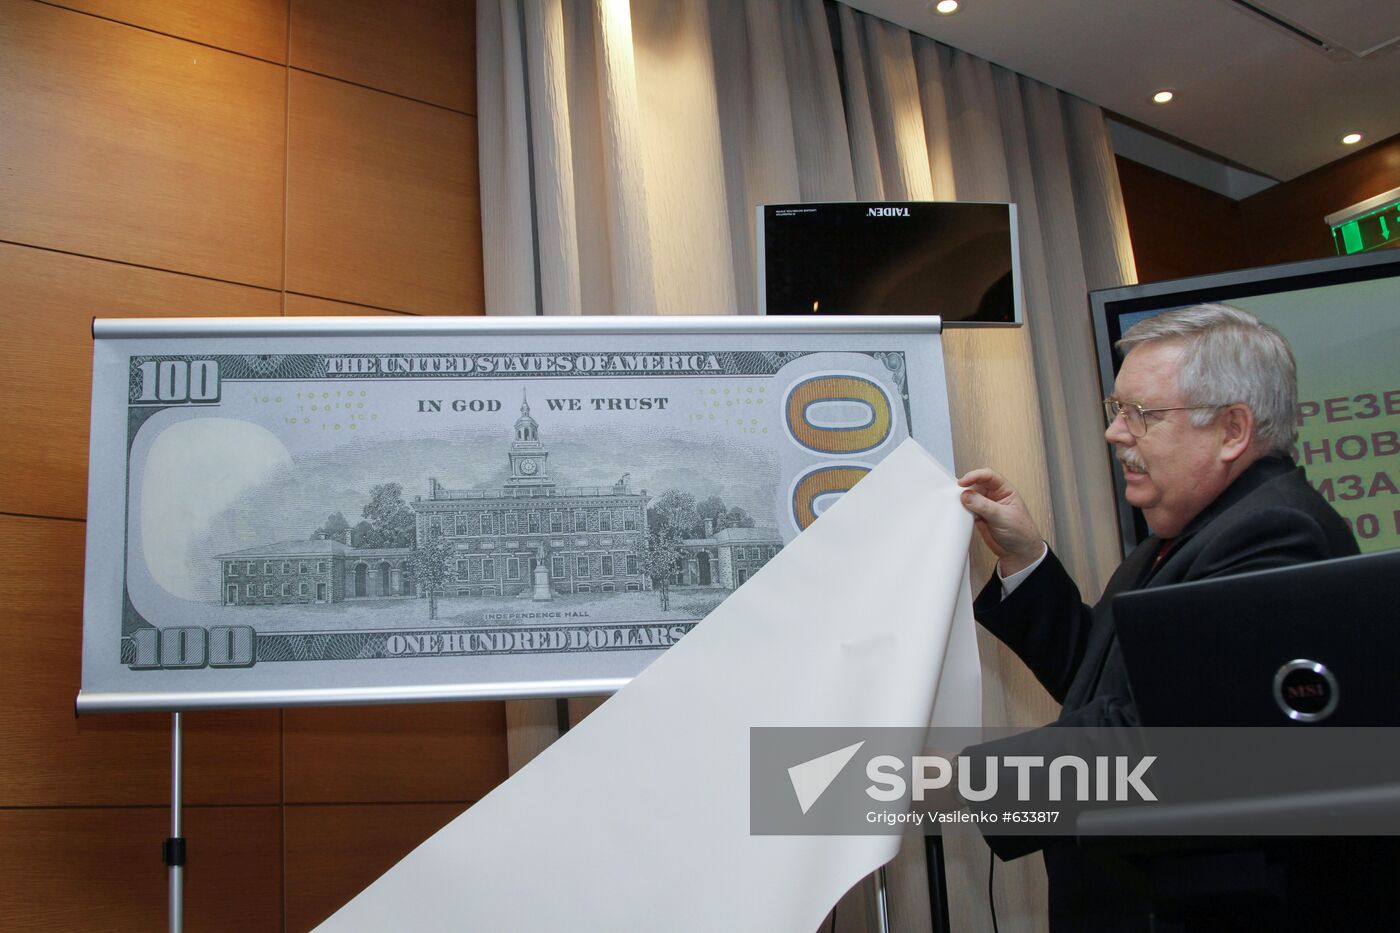 Presentation of new design of 100 hundred dollar bill